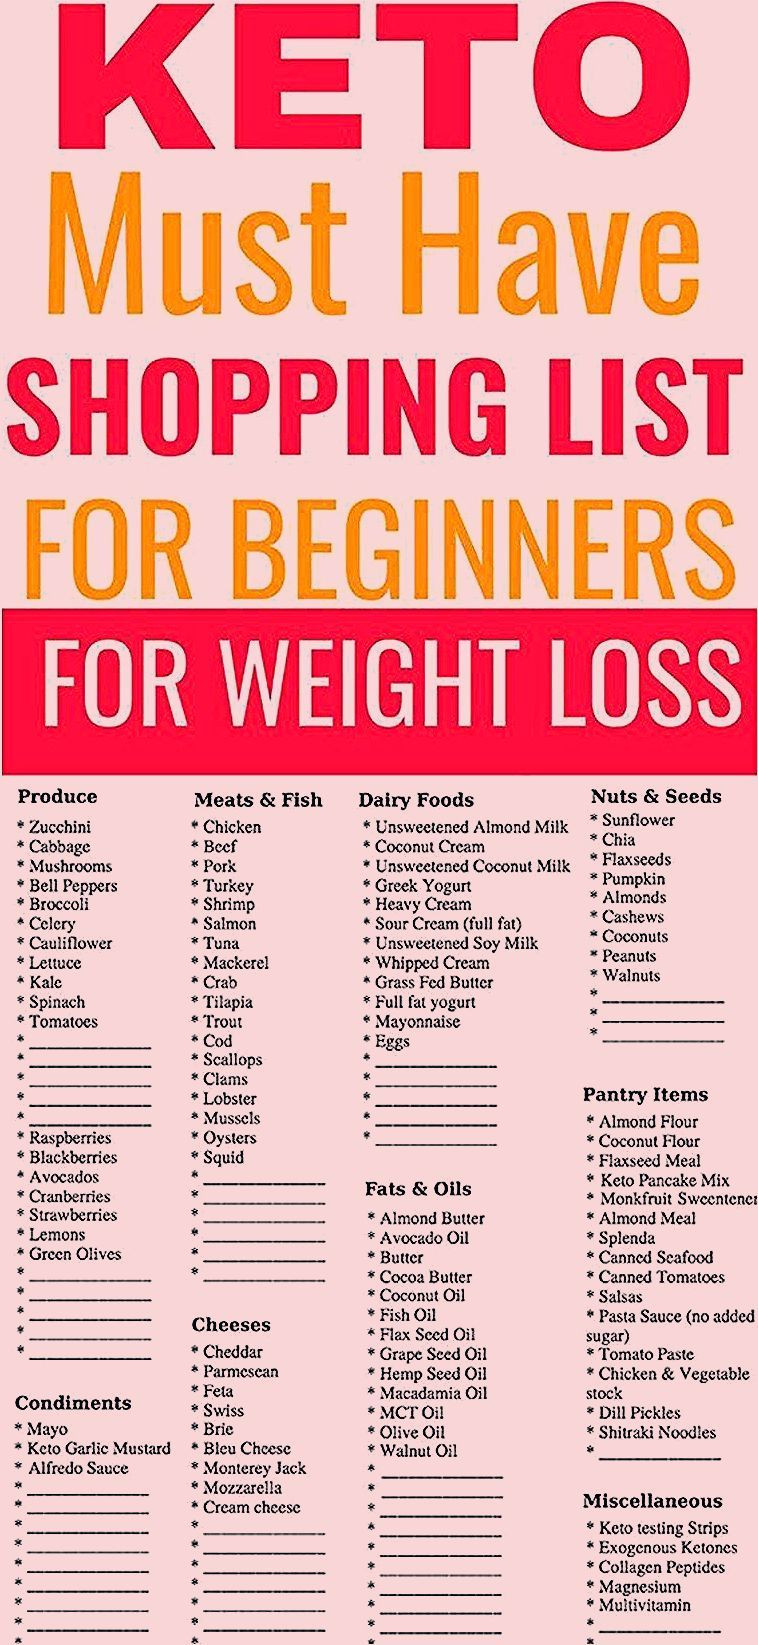 Keto Diet For Beginners Keto Diet For Beginners Week 1 Meal Plan
 keto t for beginners week 1 lunch Beginners Diet